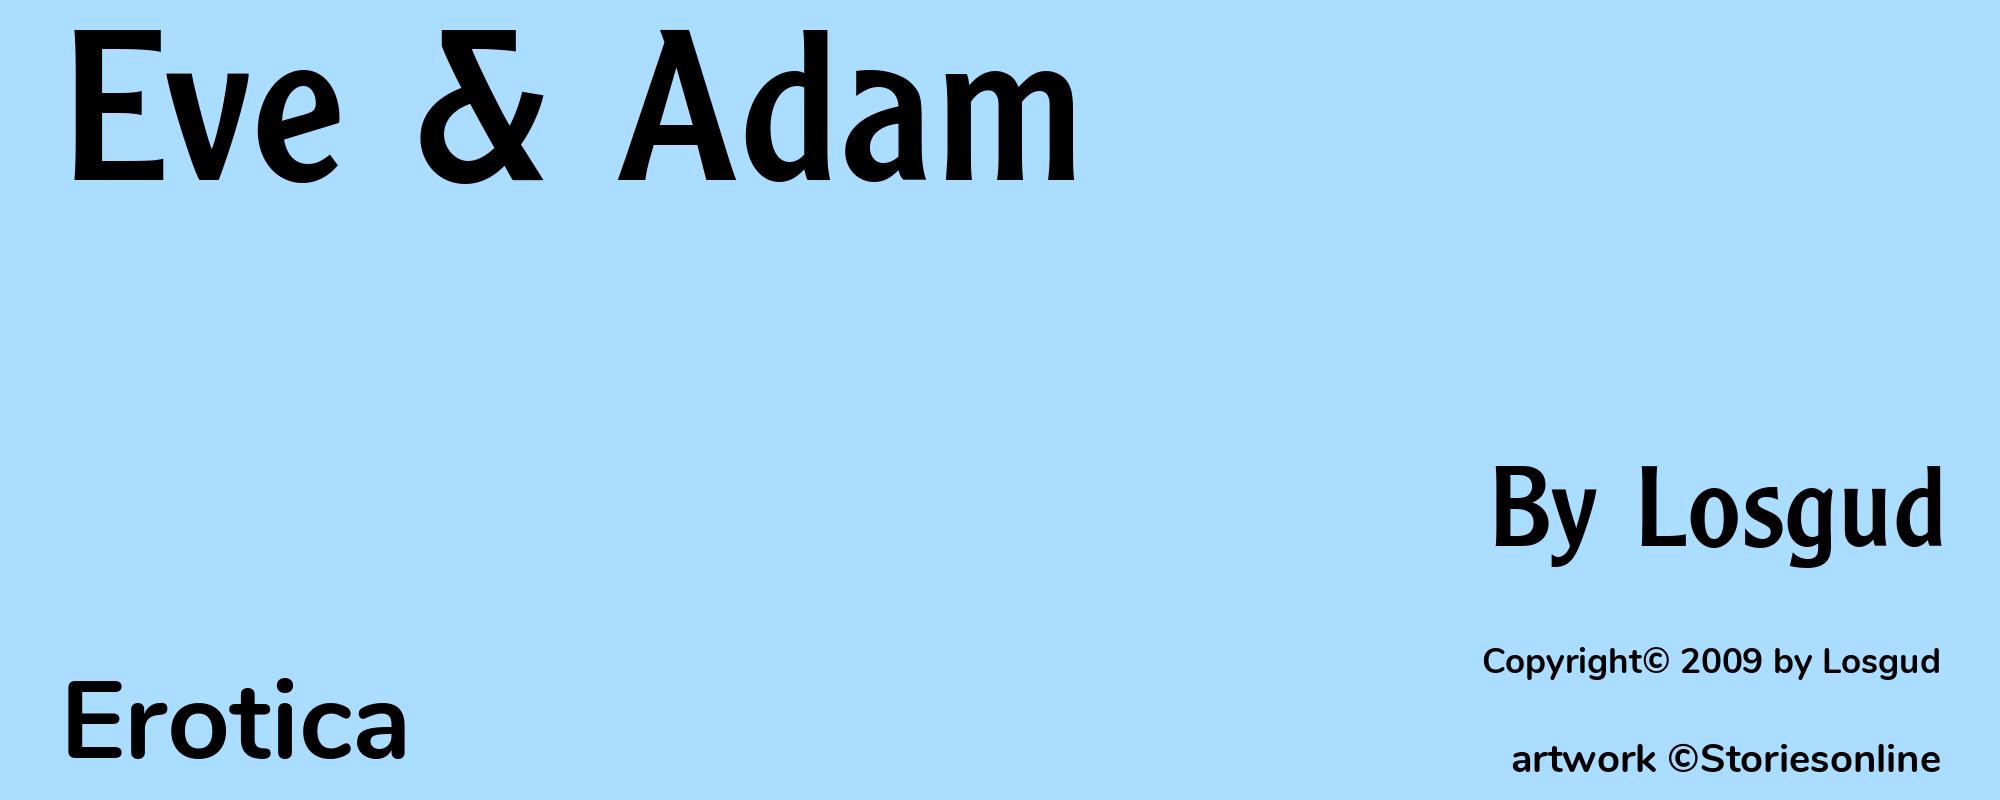 Eve & Adam - Cover